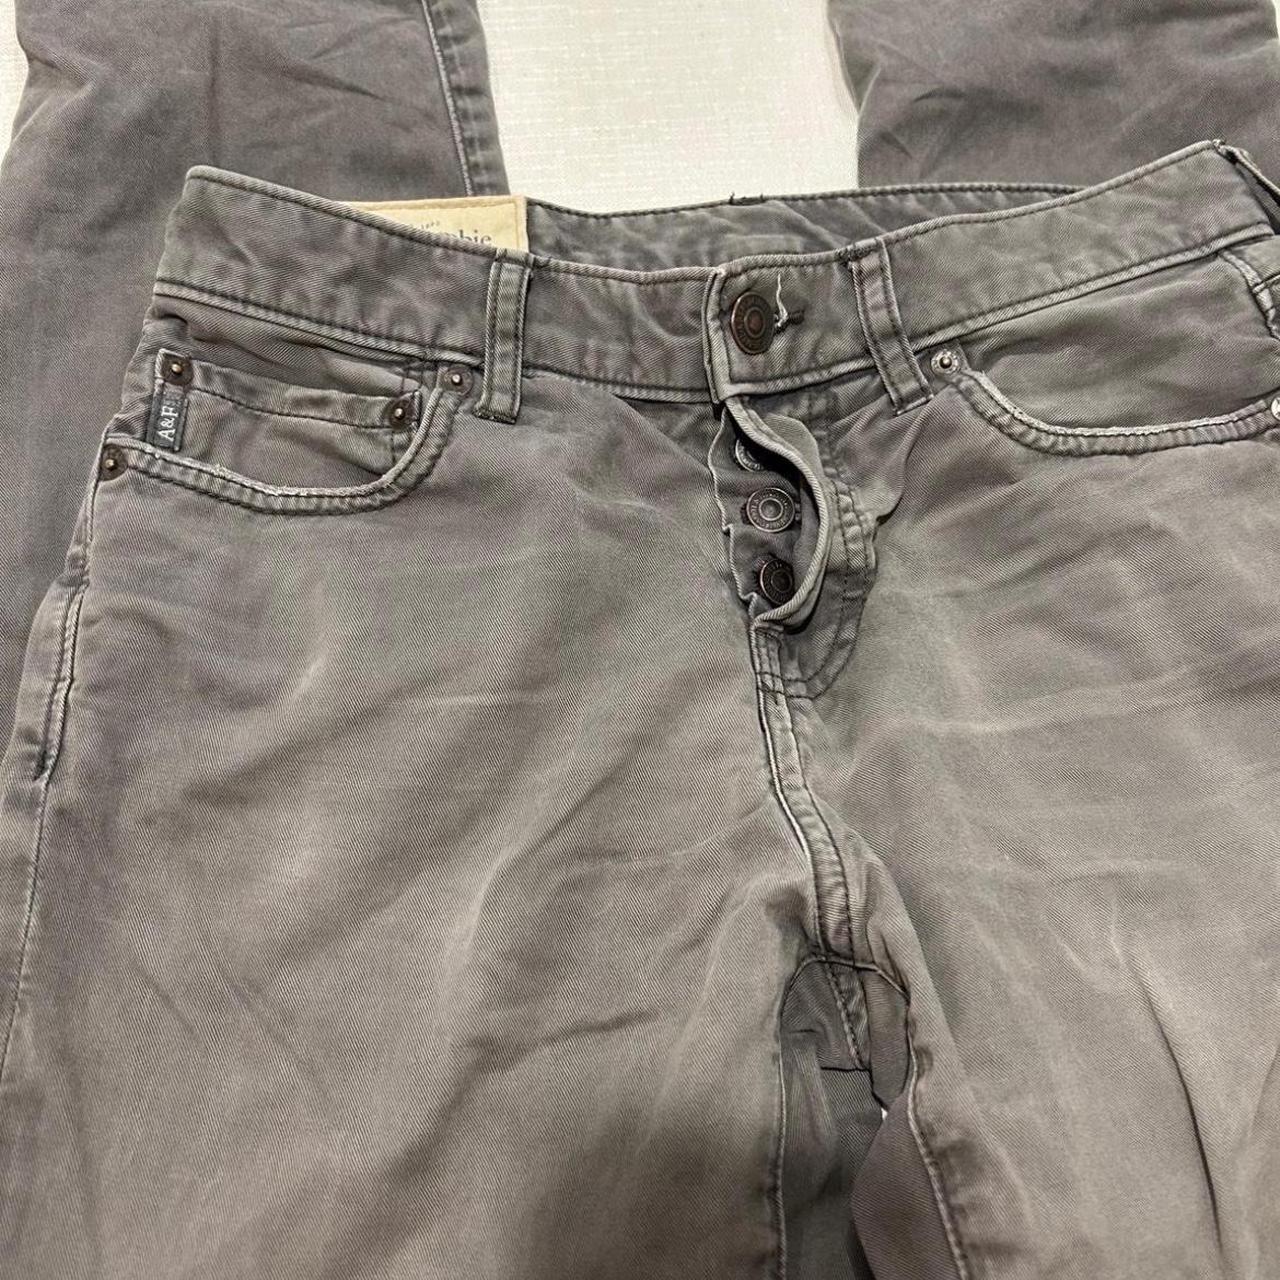 Men Jeans Abercrombie & Fitch Button detail Size :... - Depop